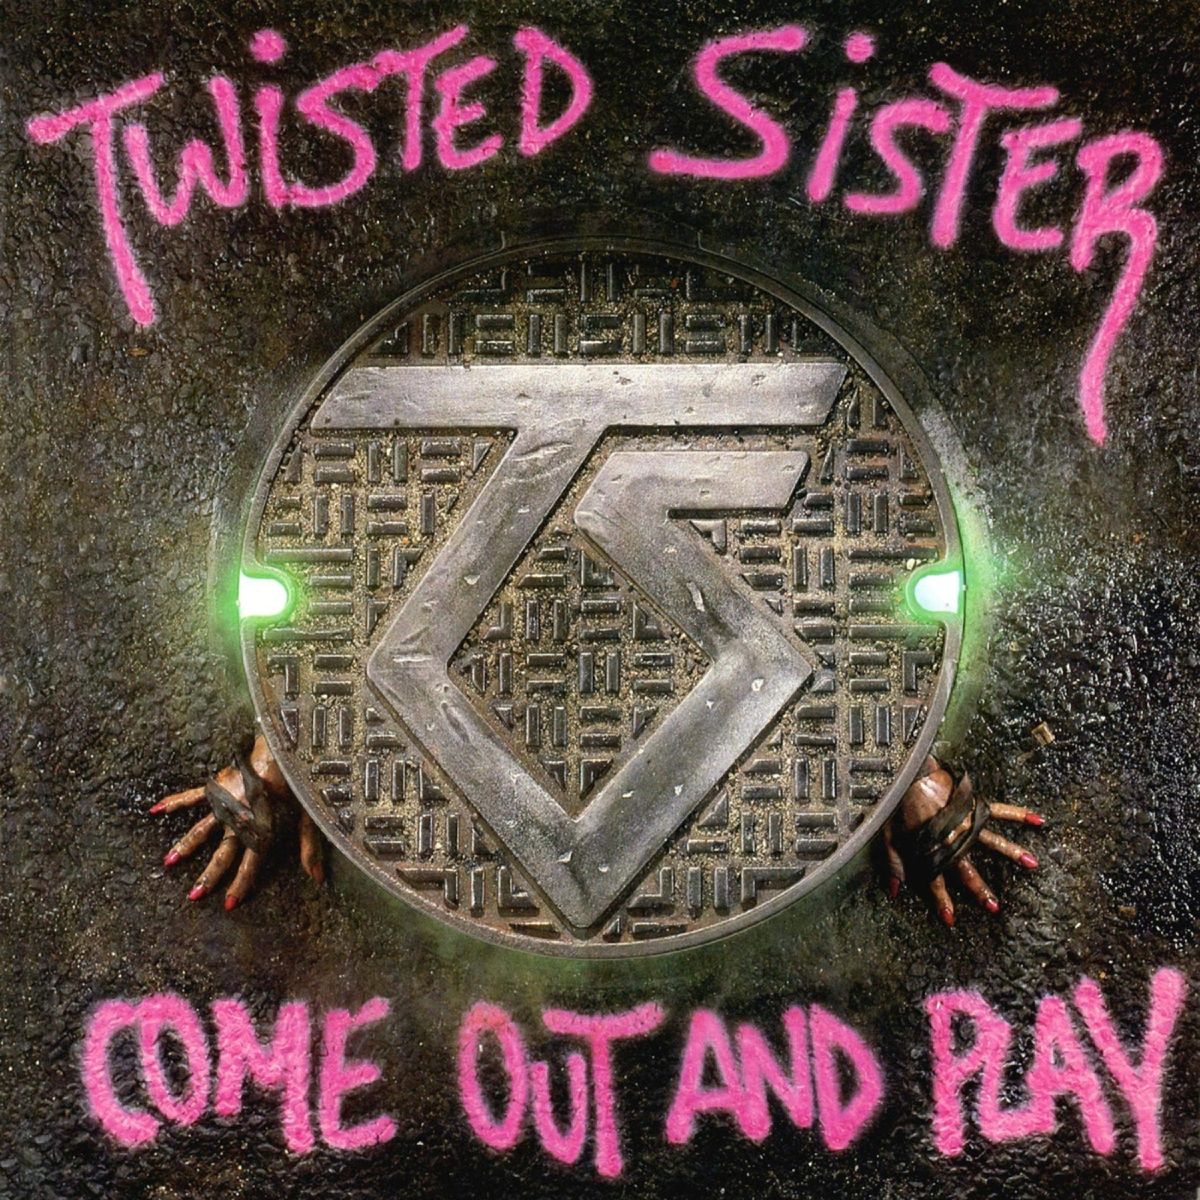 Couverture de l'album "Come Out and Play" de Twisted Sister